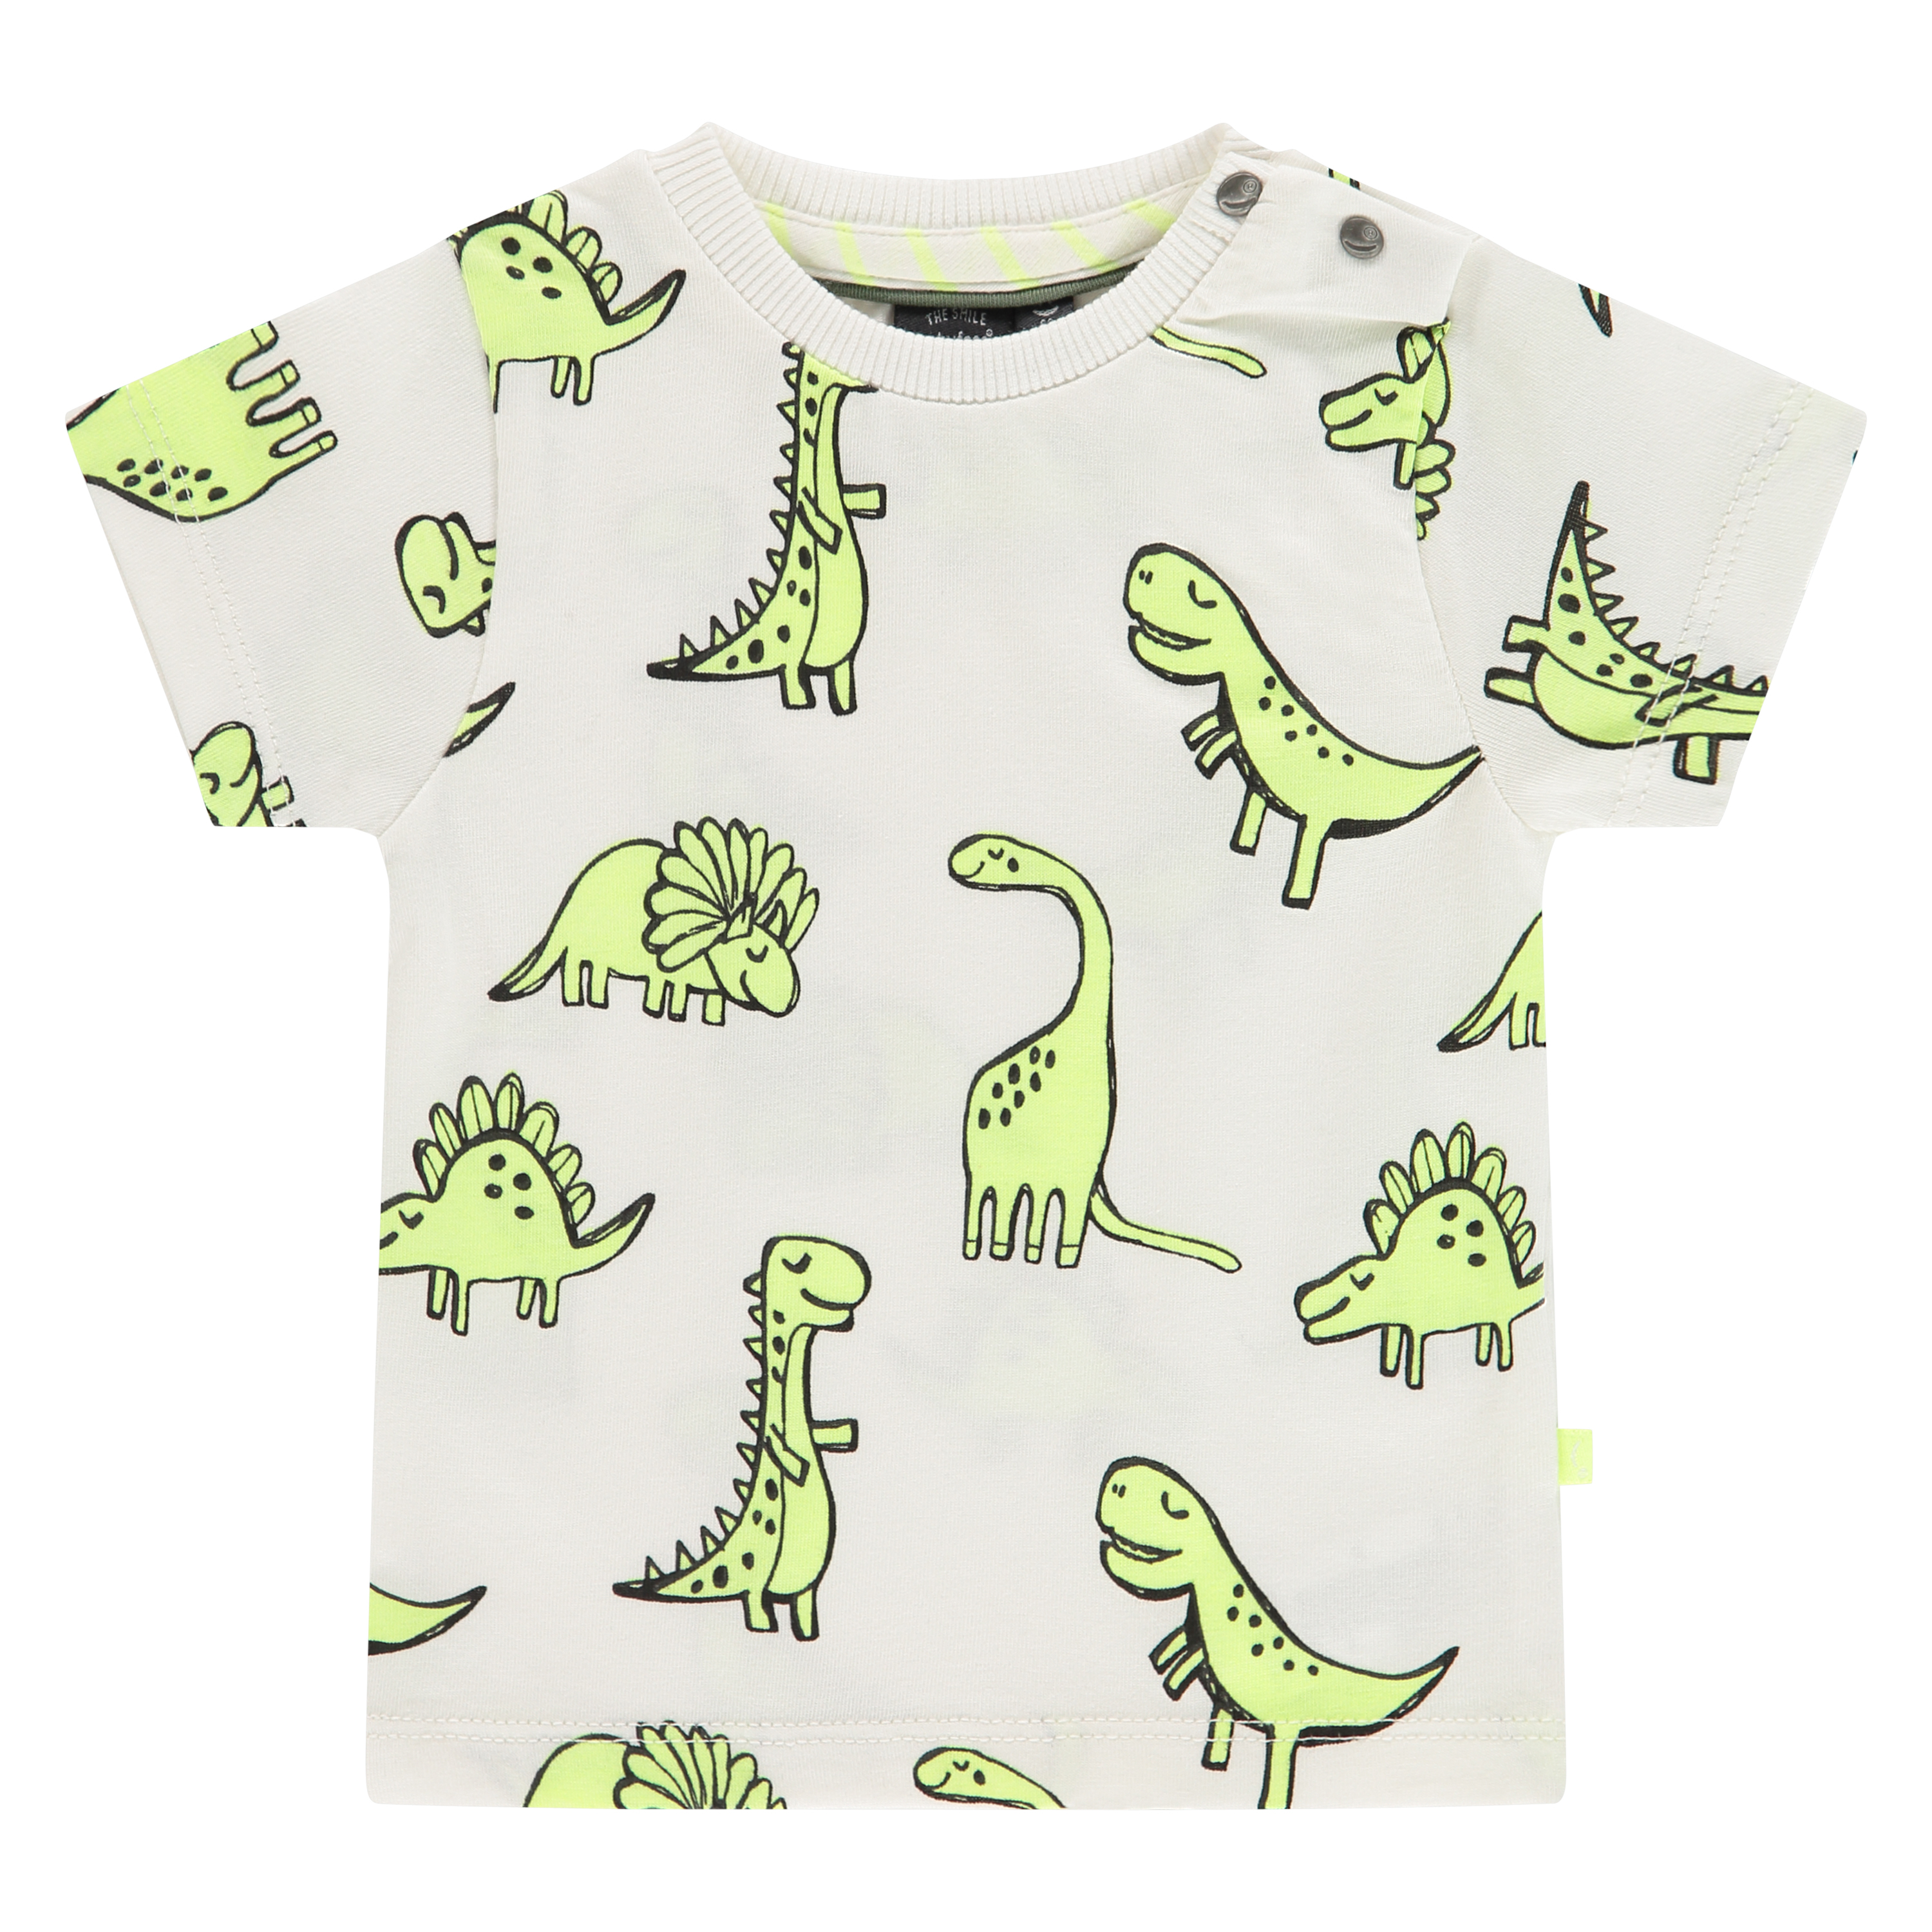 Dinosaur print baby shirt 1